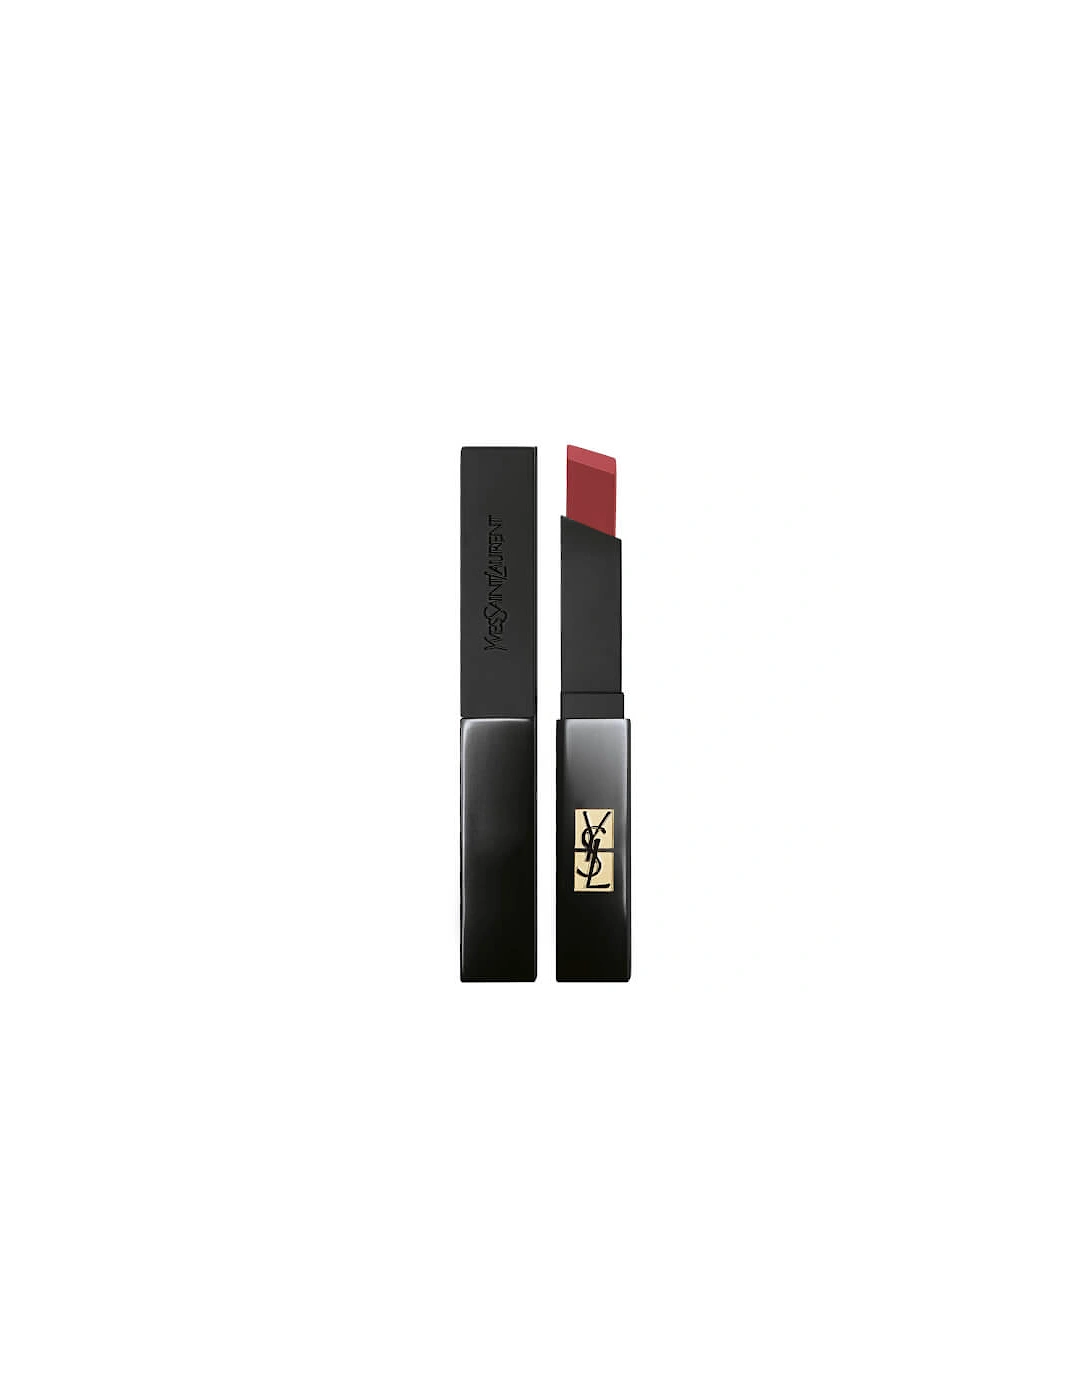 Yves Saint Laurent The Slim Velvet Radical Lipstick - 301 Radical Brown, 13 of 12